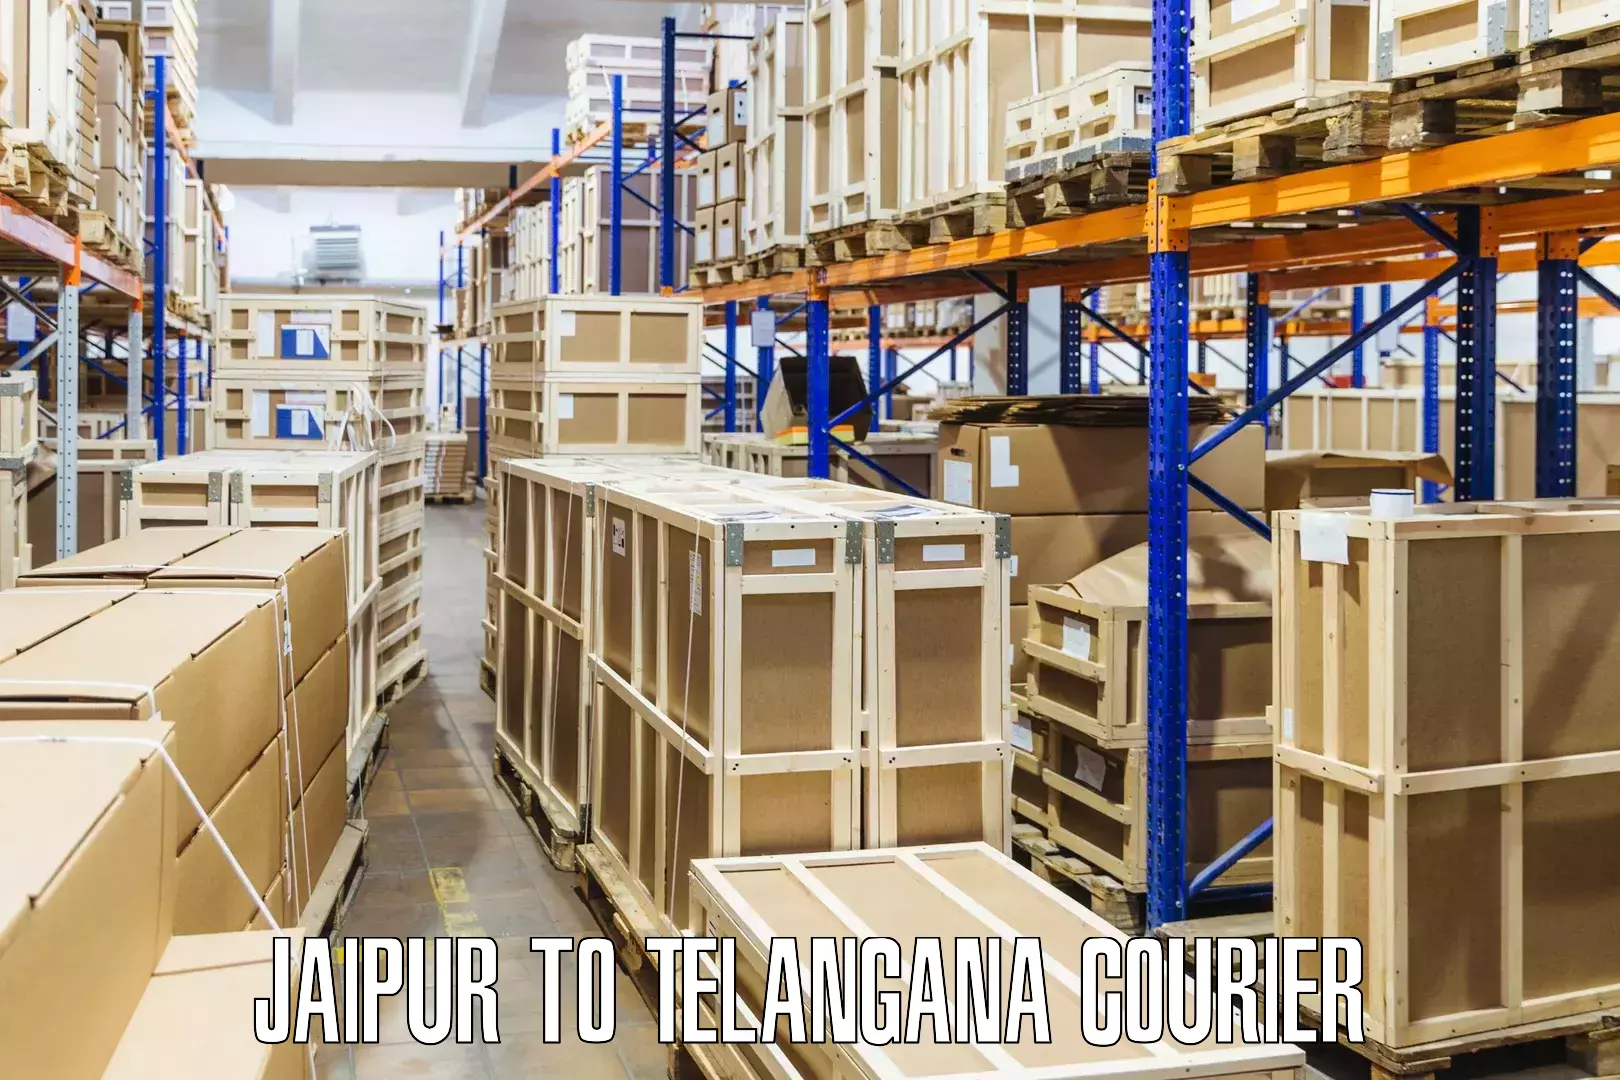 Courier service comparison Jaipur to Netrang